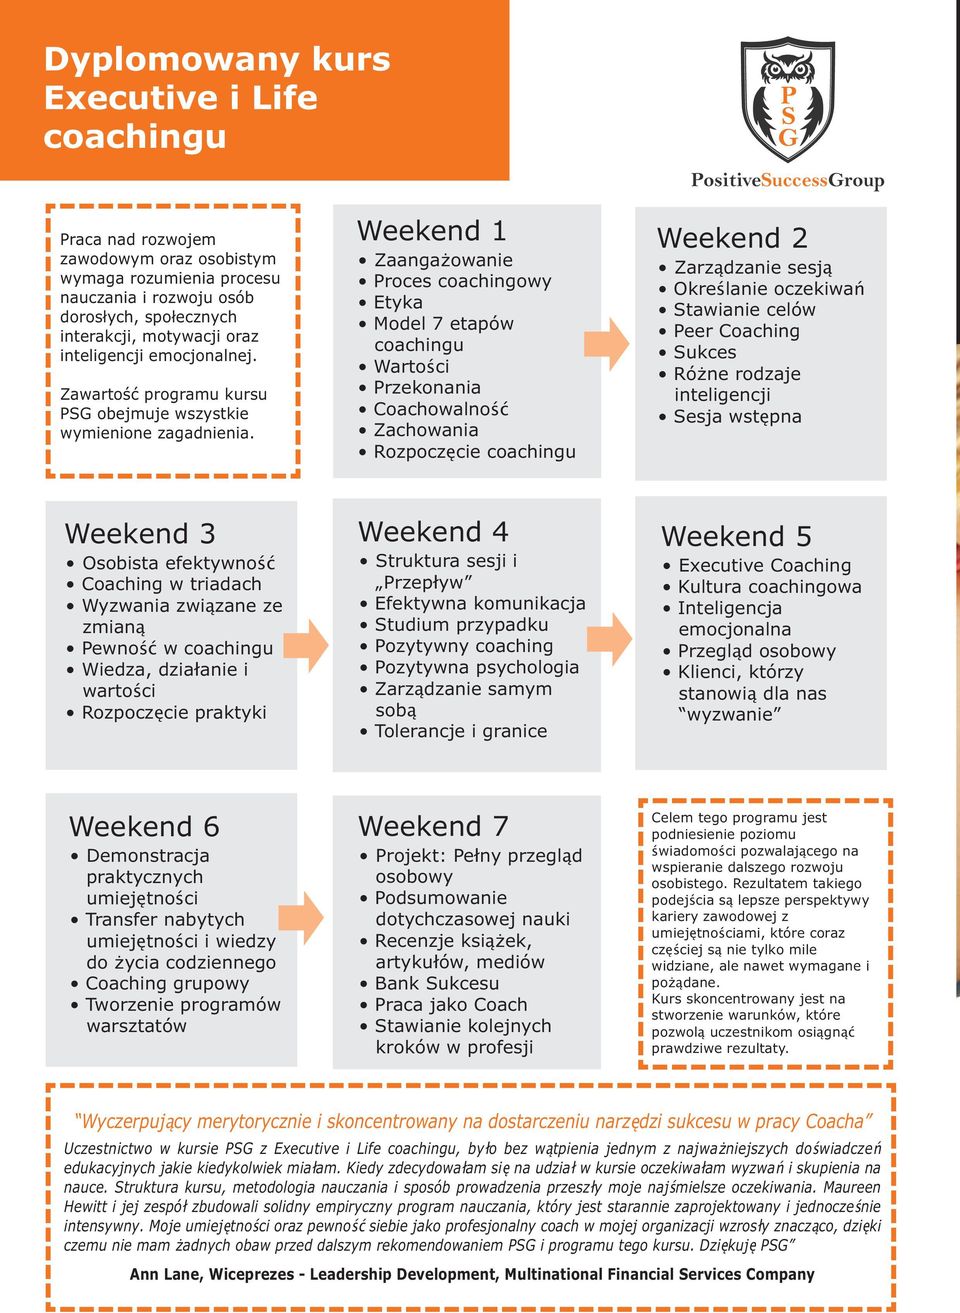 Weekend 1 Zaanga owanie Proces coachingowy Etyka Model 7 etapów coachingu Wartości Przekonania Coachowalność Zachowania Rozpoczęcie coachingu PositiveSuccessGroup Weekend 2 Zarządzanie sesją